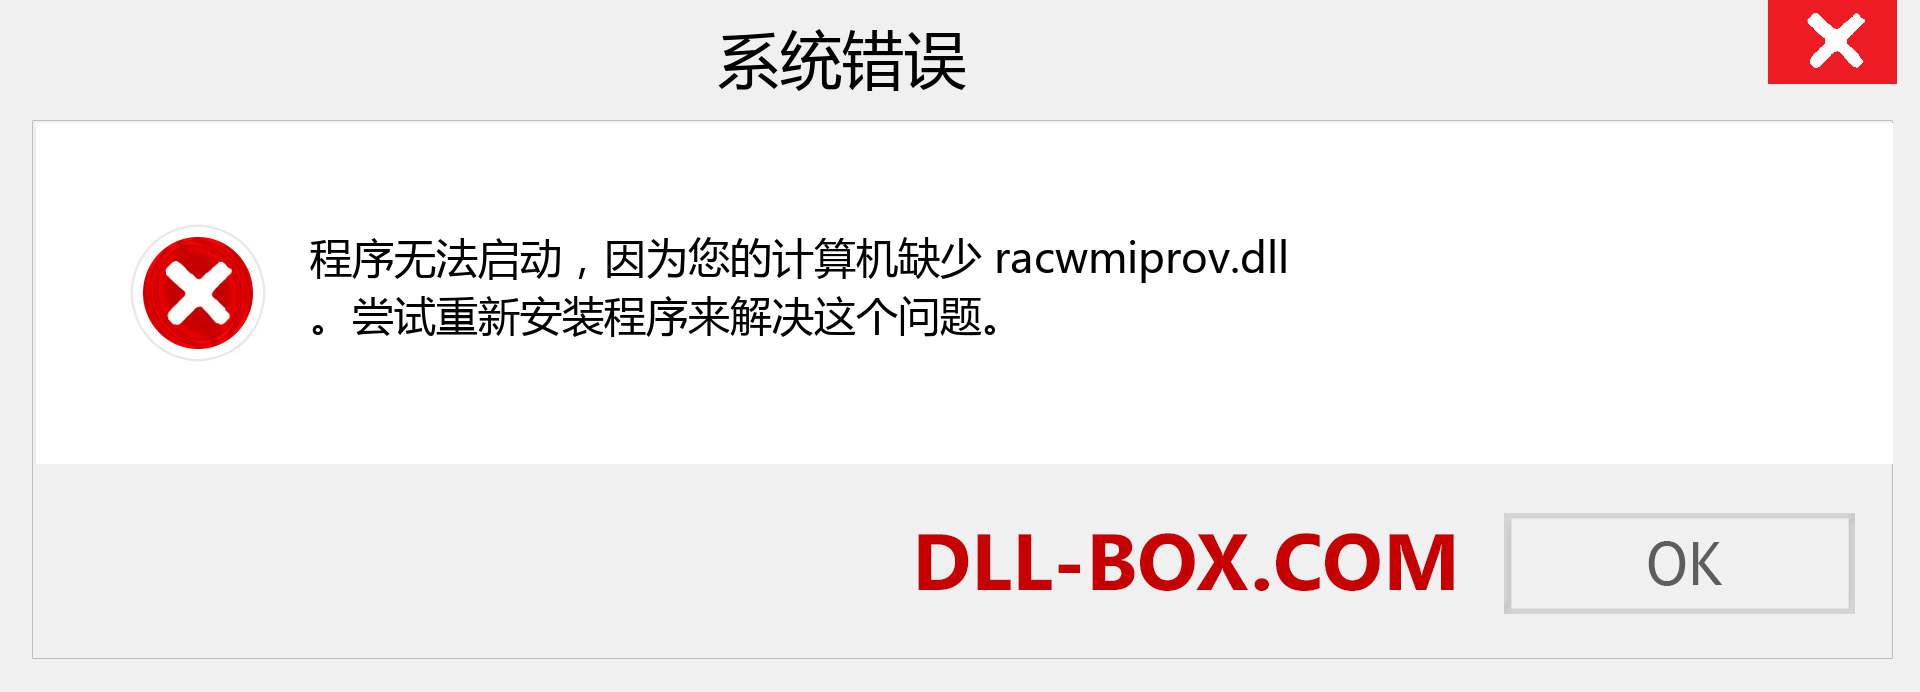 racwmiprov.dll 文件丢失？。 适用于 Windows 7、8、10 的下载 - 修复 Windows、照片、图像上的 racwmiprov dll 丢失错误